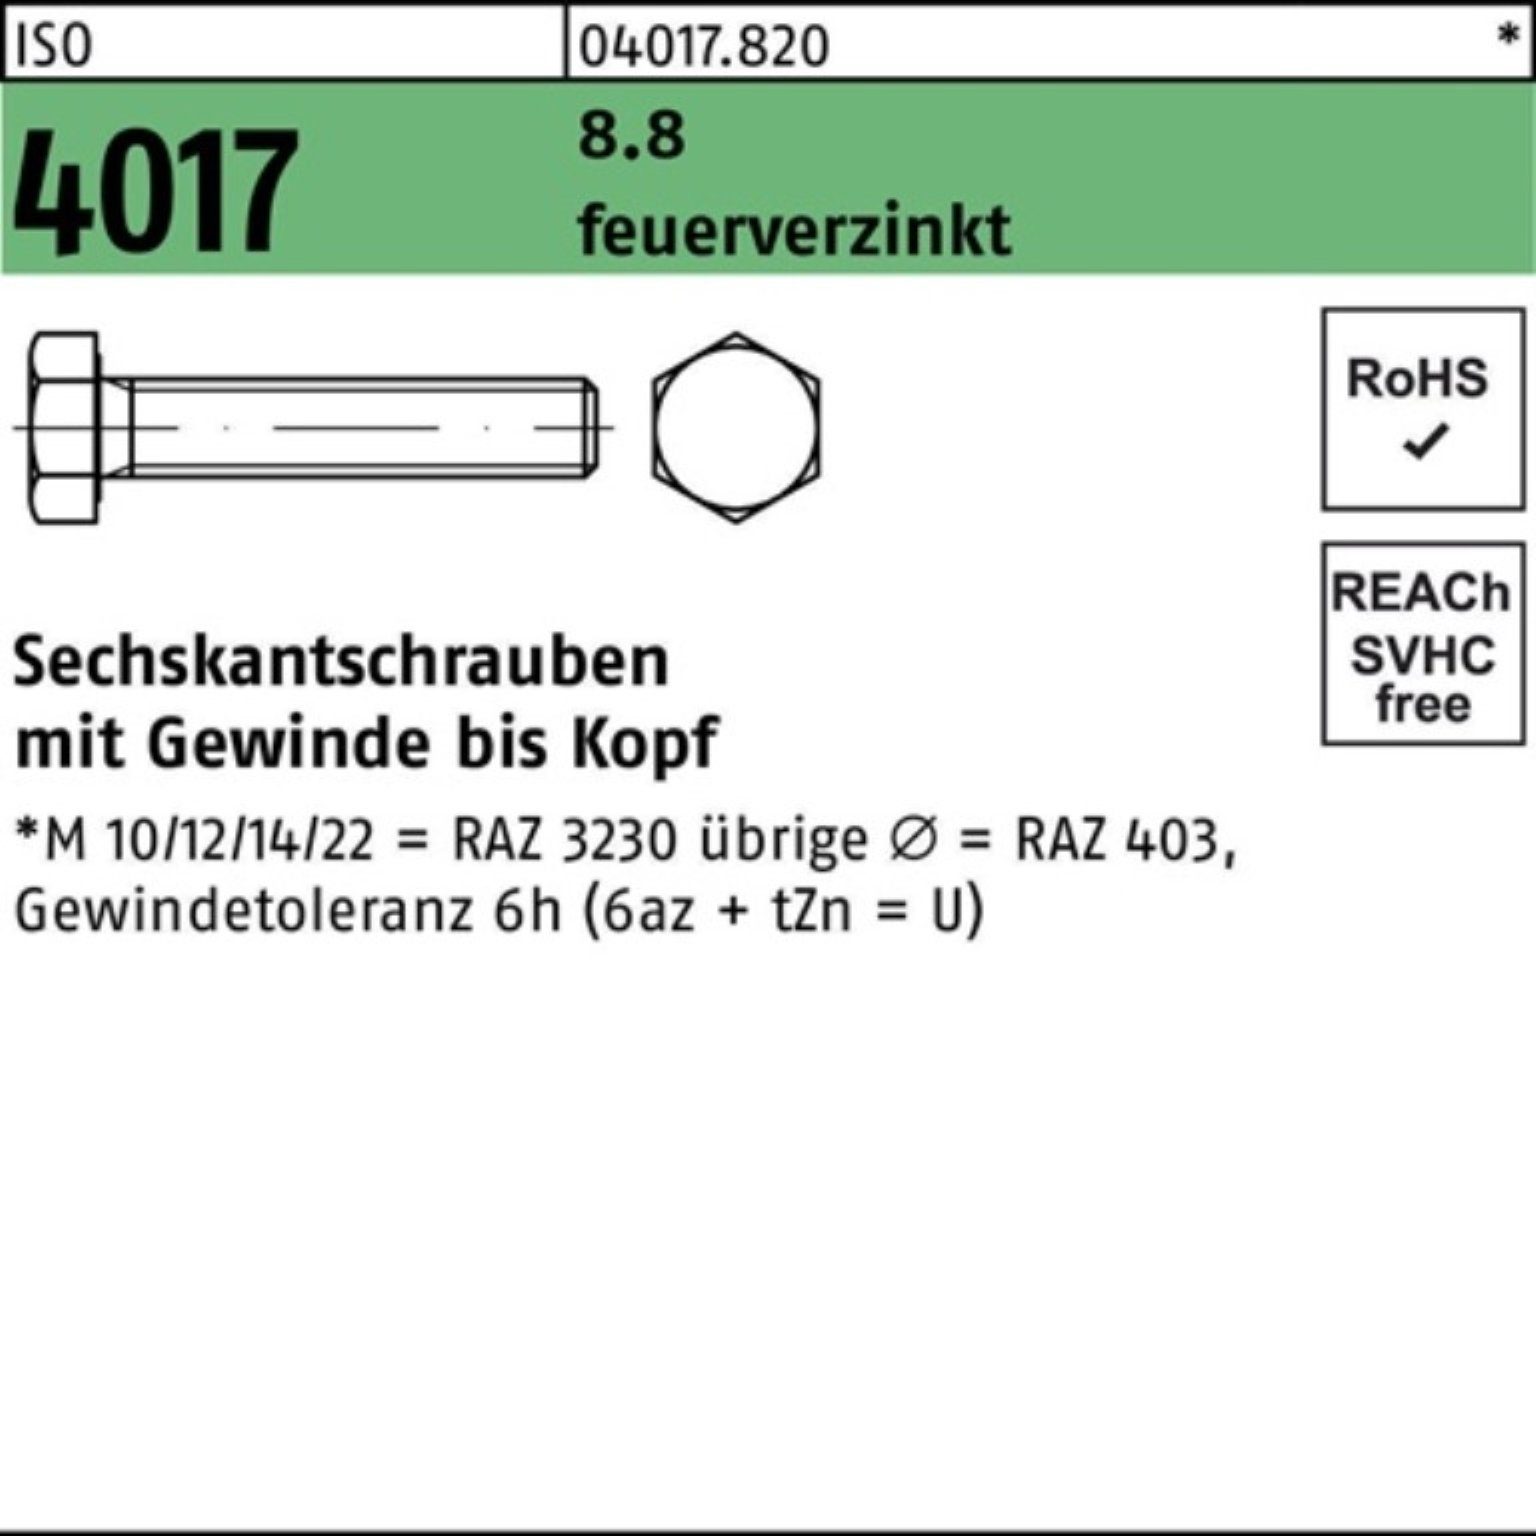 Bufab Sechskantschraube 100er Pack Sechskantschraube ISO 4017 VG M10x 70 8.8 feuerverz. 100 St